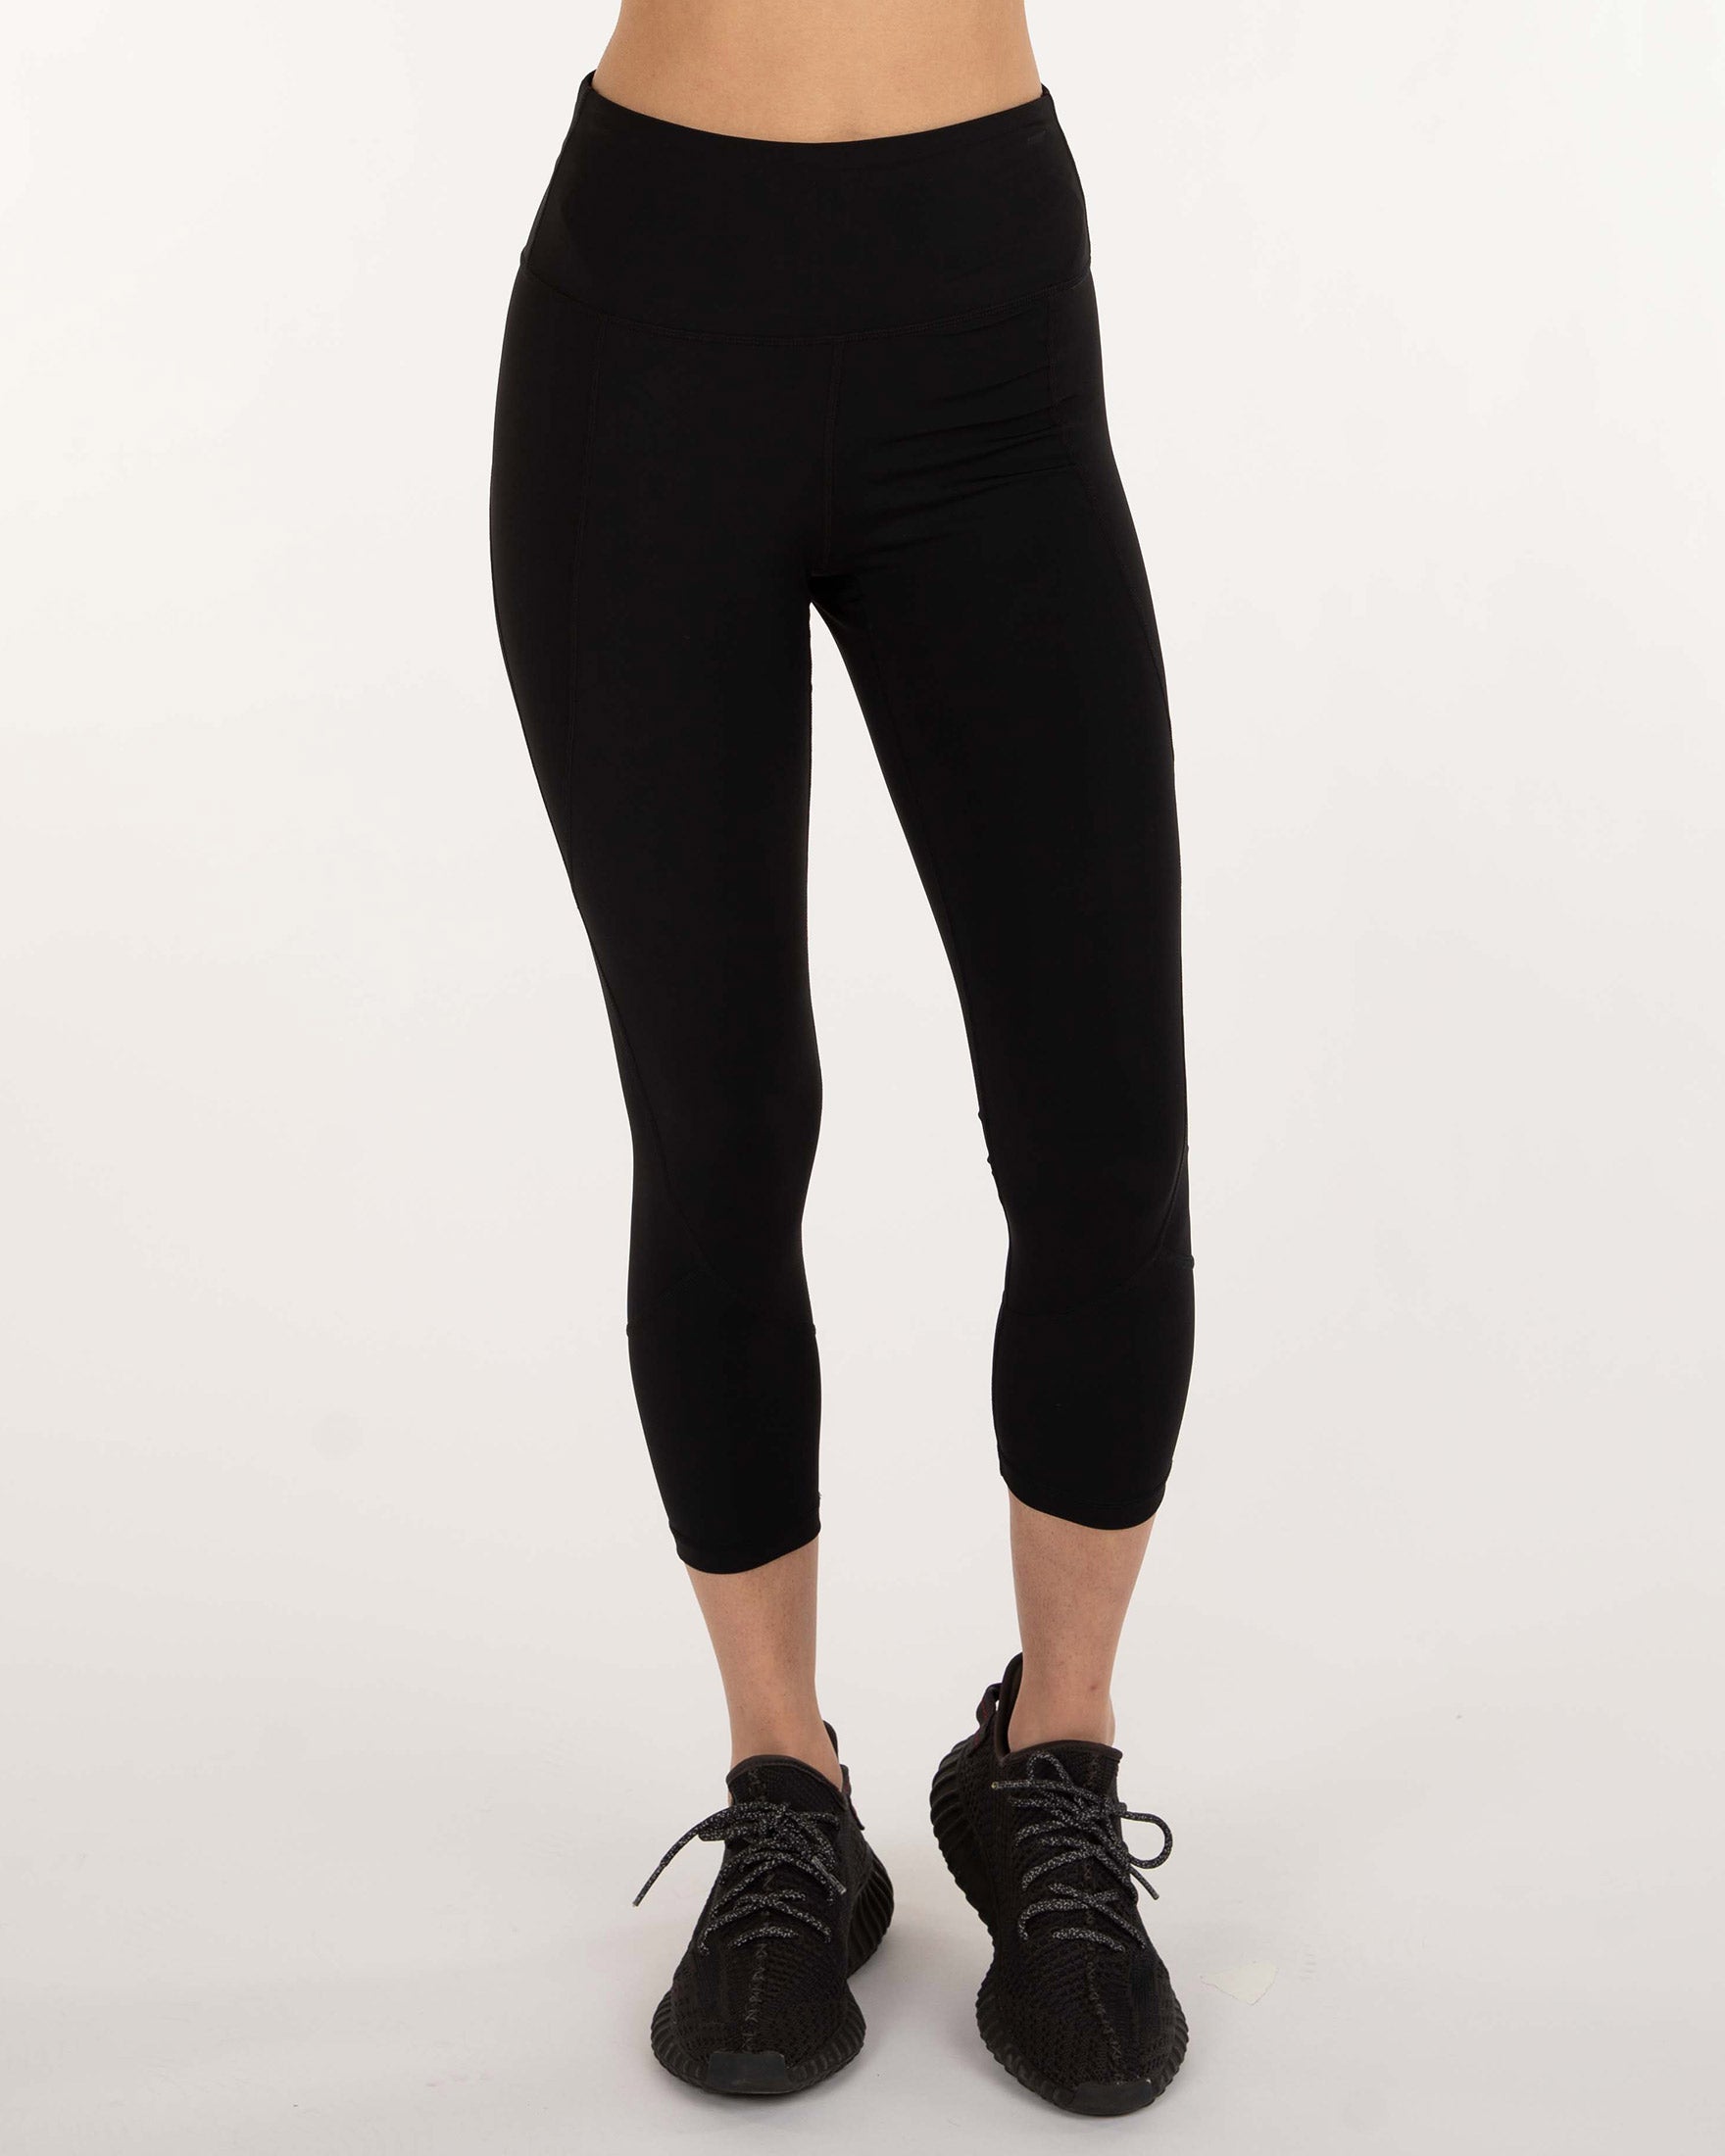 Lululemon Capri Activewear Pants (Size: 6) - Gem